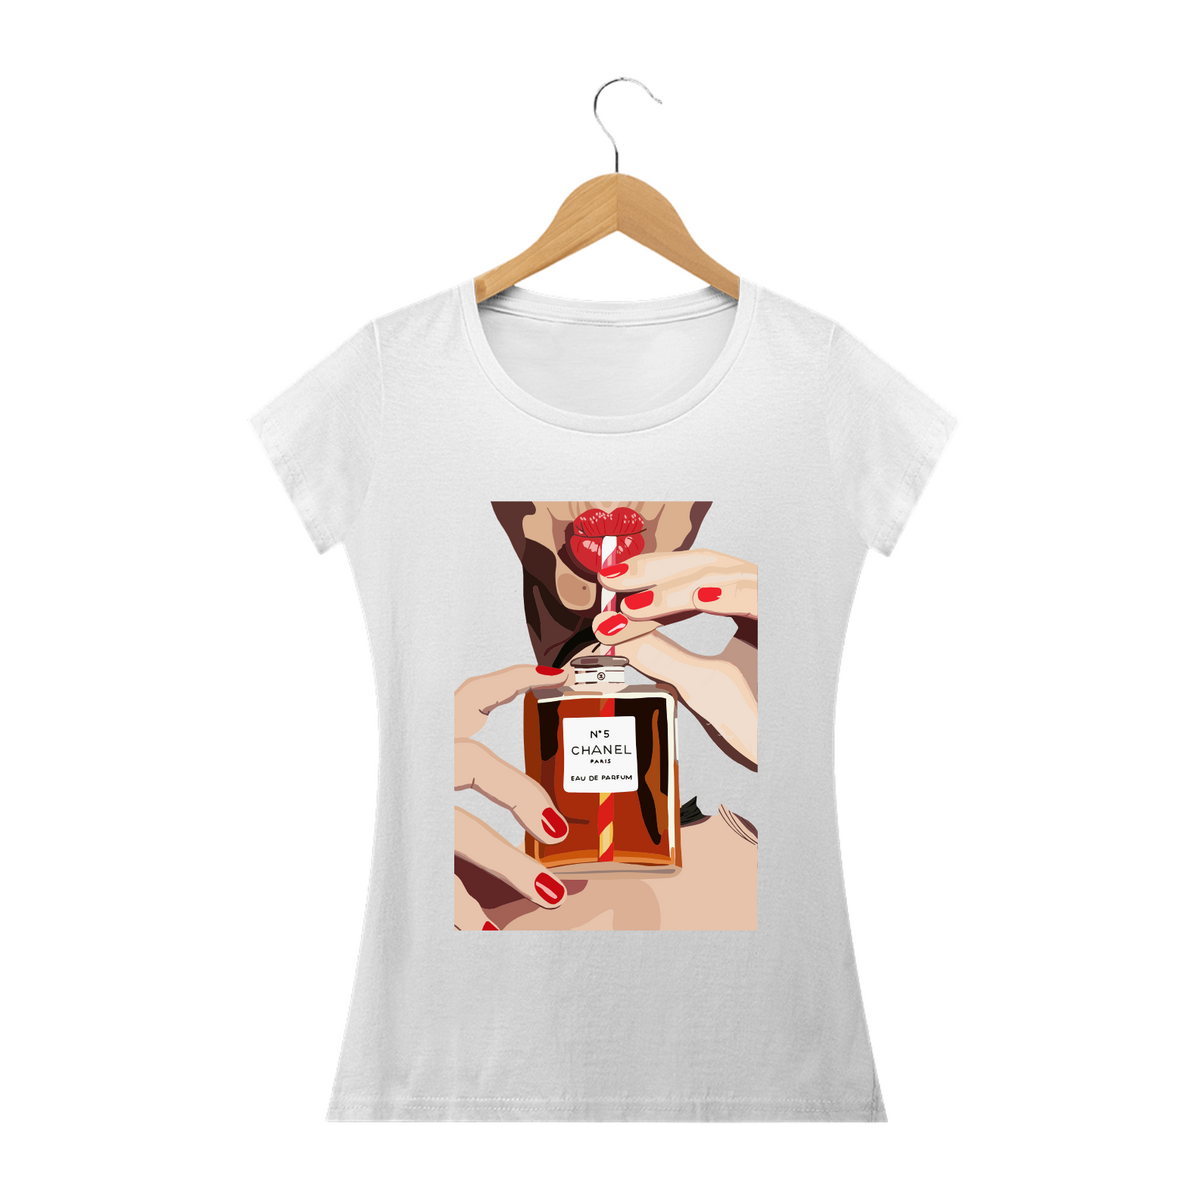 Nome do produto: CHANEL N5 - Camiseta Feminina Personalizada com Estampa Pop Art